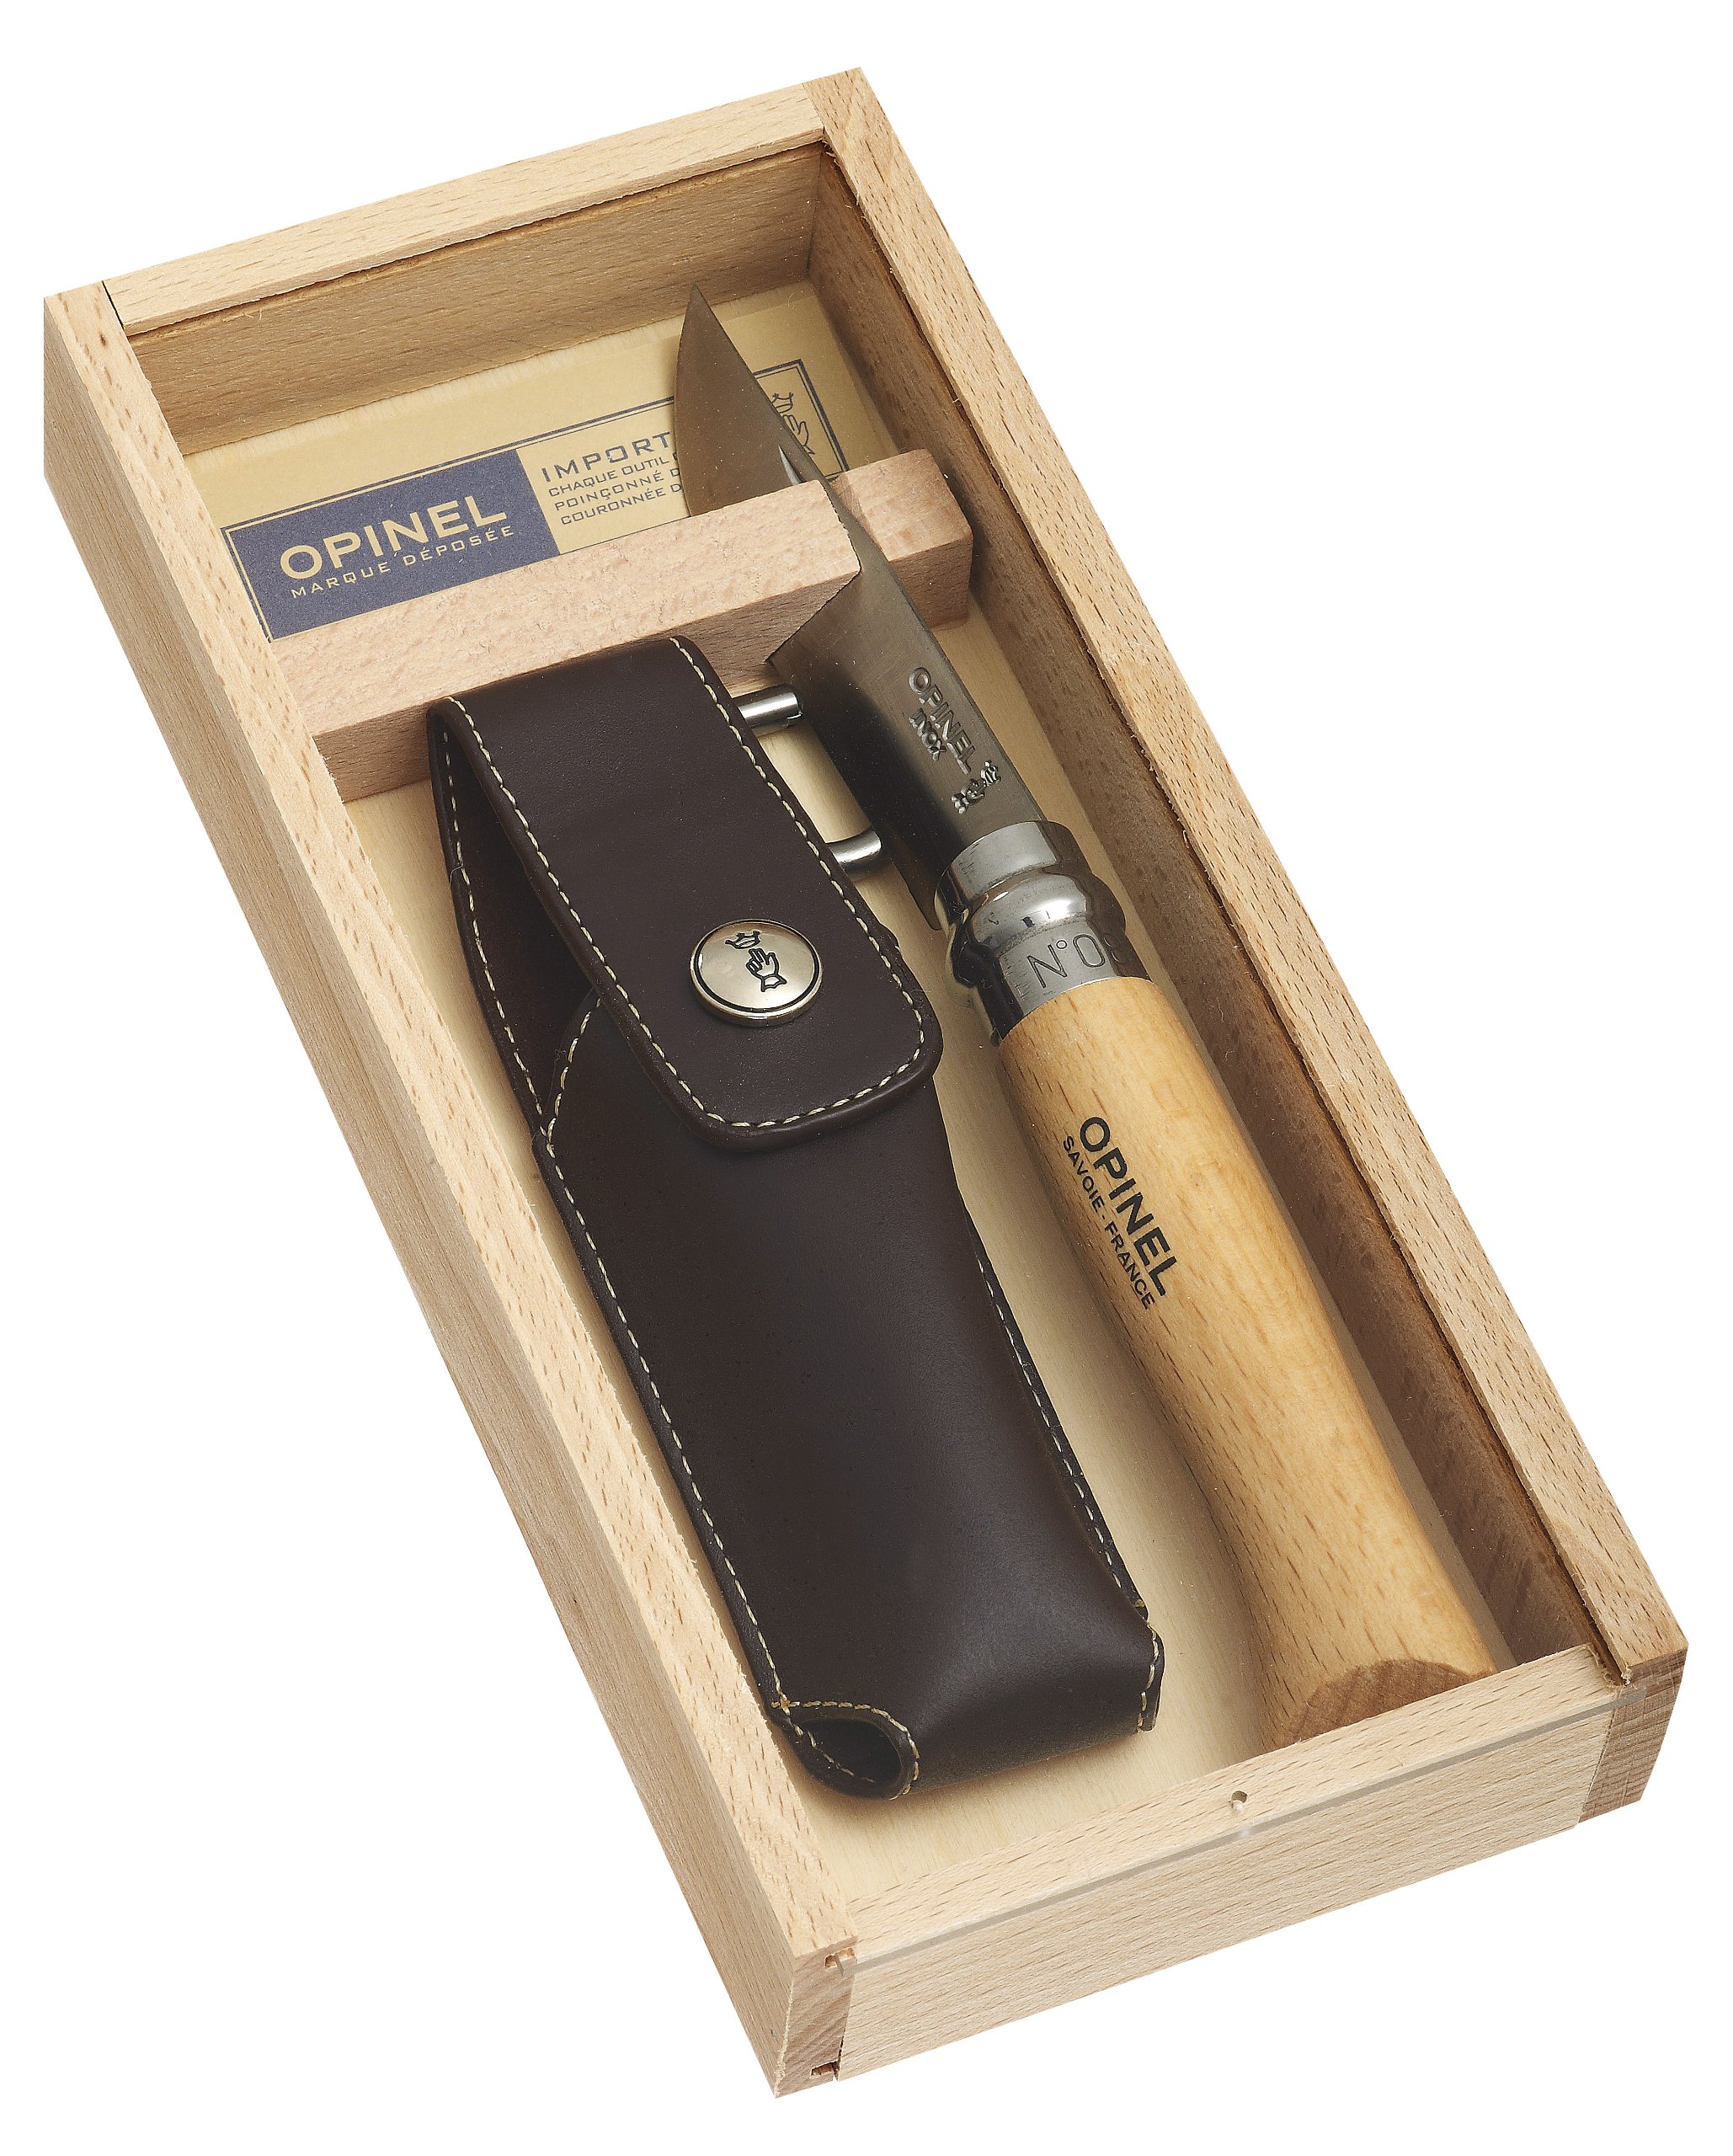 Opinel Opinel-Messer, Größe 8, modifizierter Sandvik Stahl 12C27 (rostfrei), Buchenholzgriff, Kunstleder-Etui mit Karabinerhaken, Holzbox